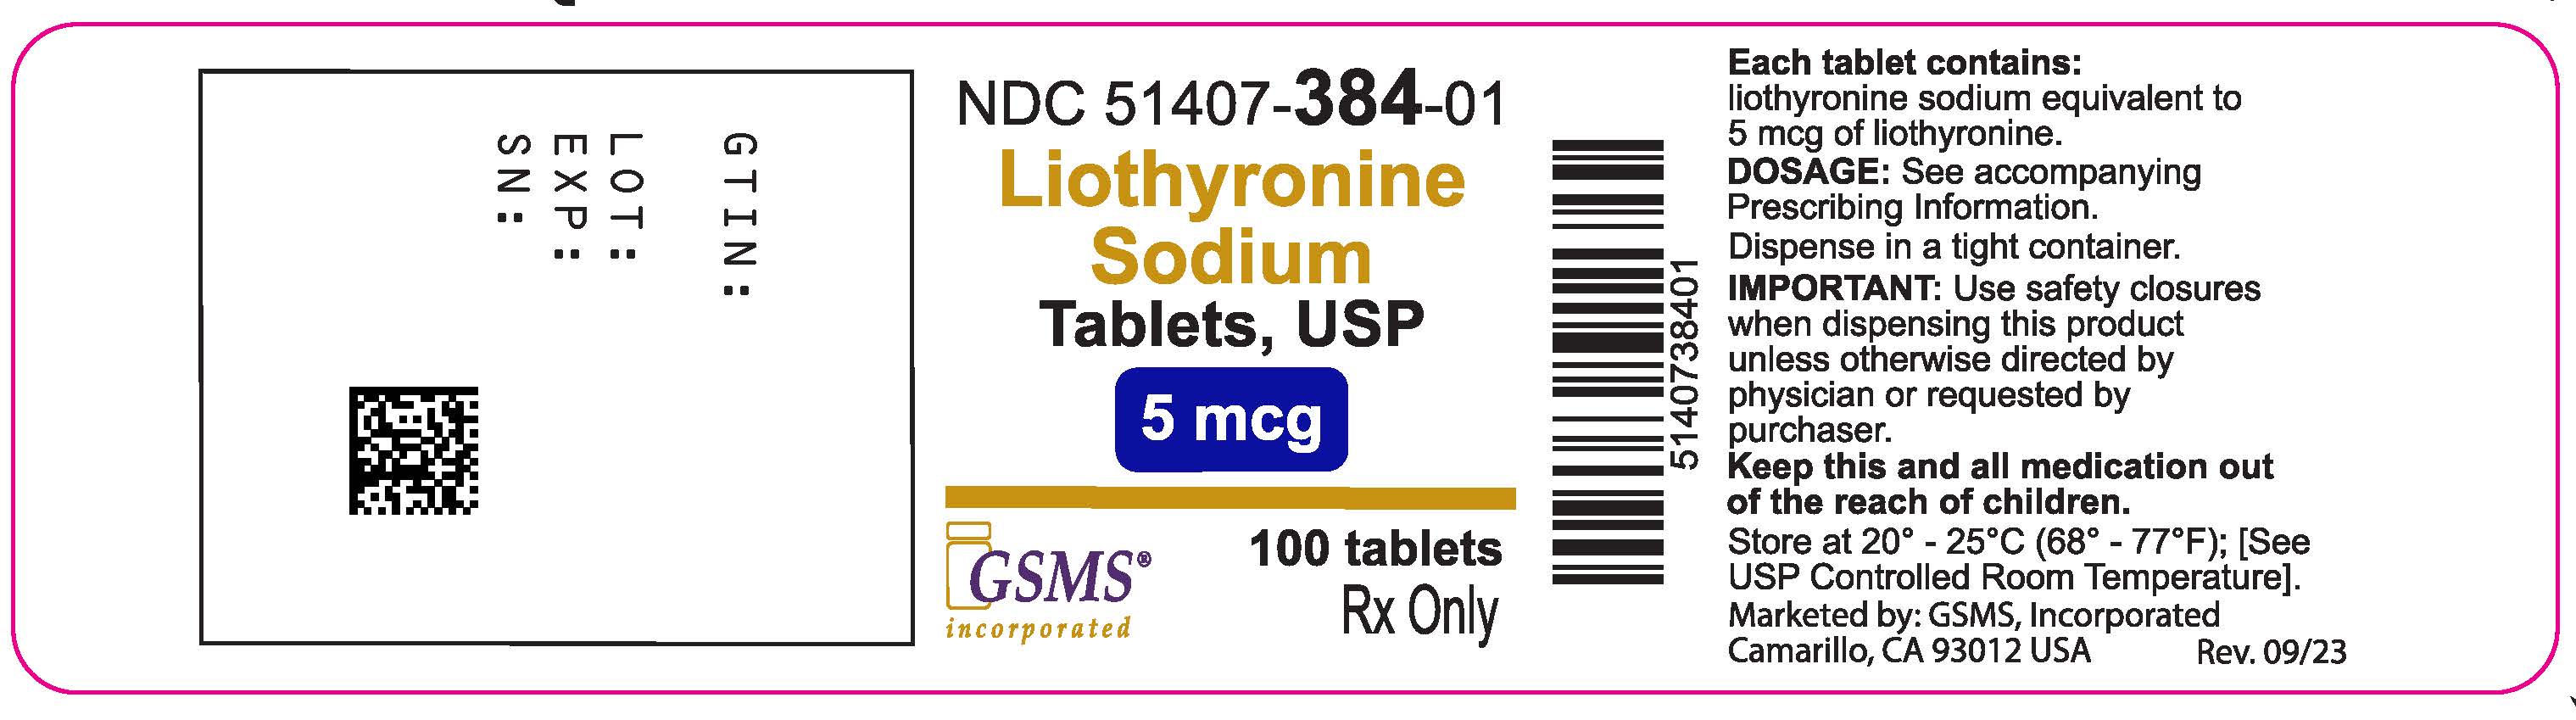 Liothyronine Soidum Tabs - 51407-384-01OL - Rev 0923.jpg